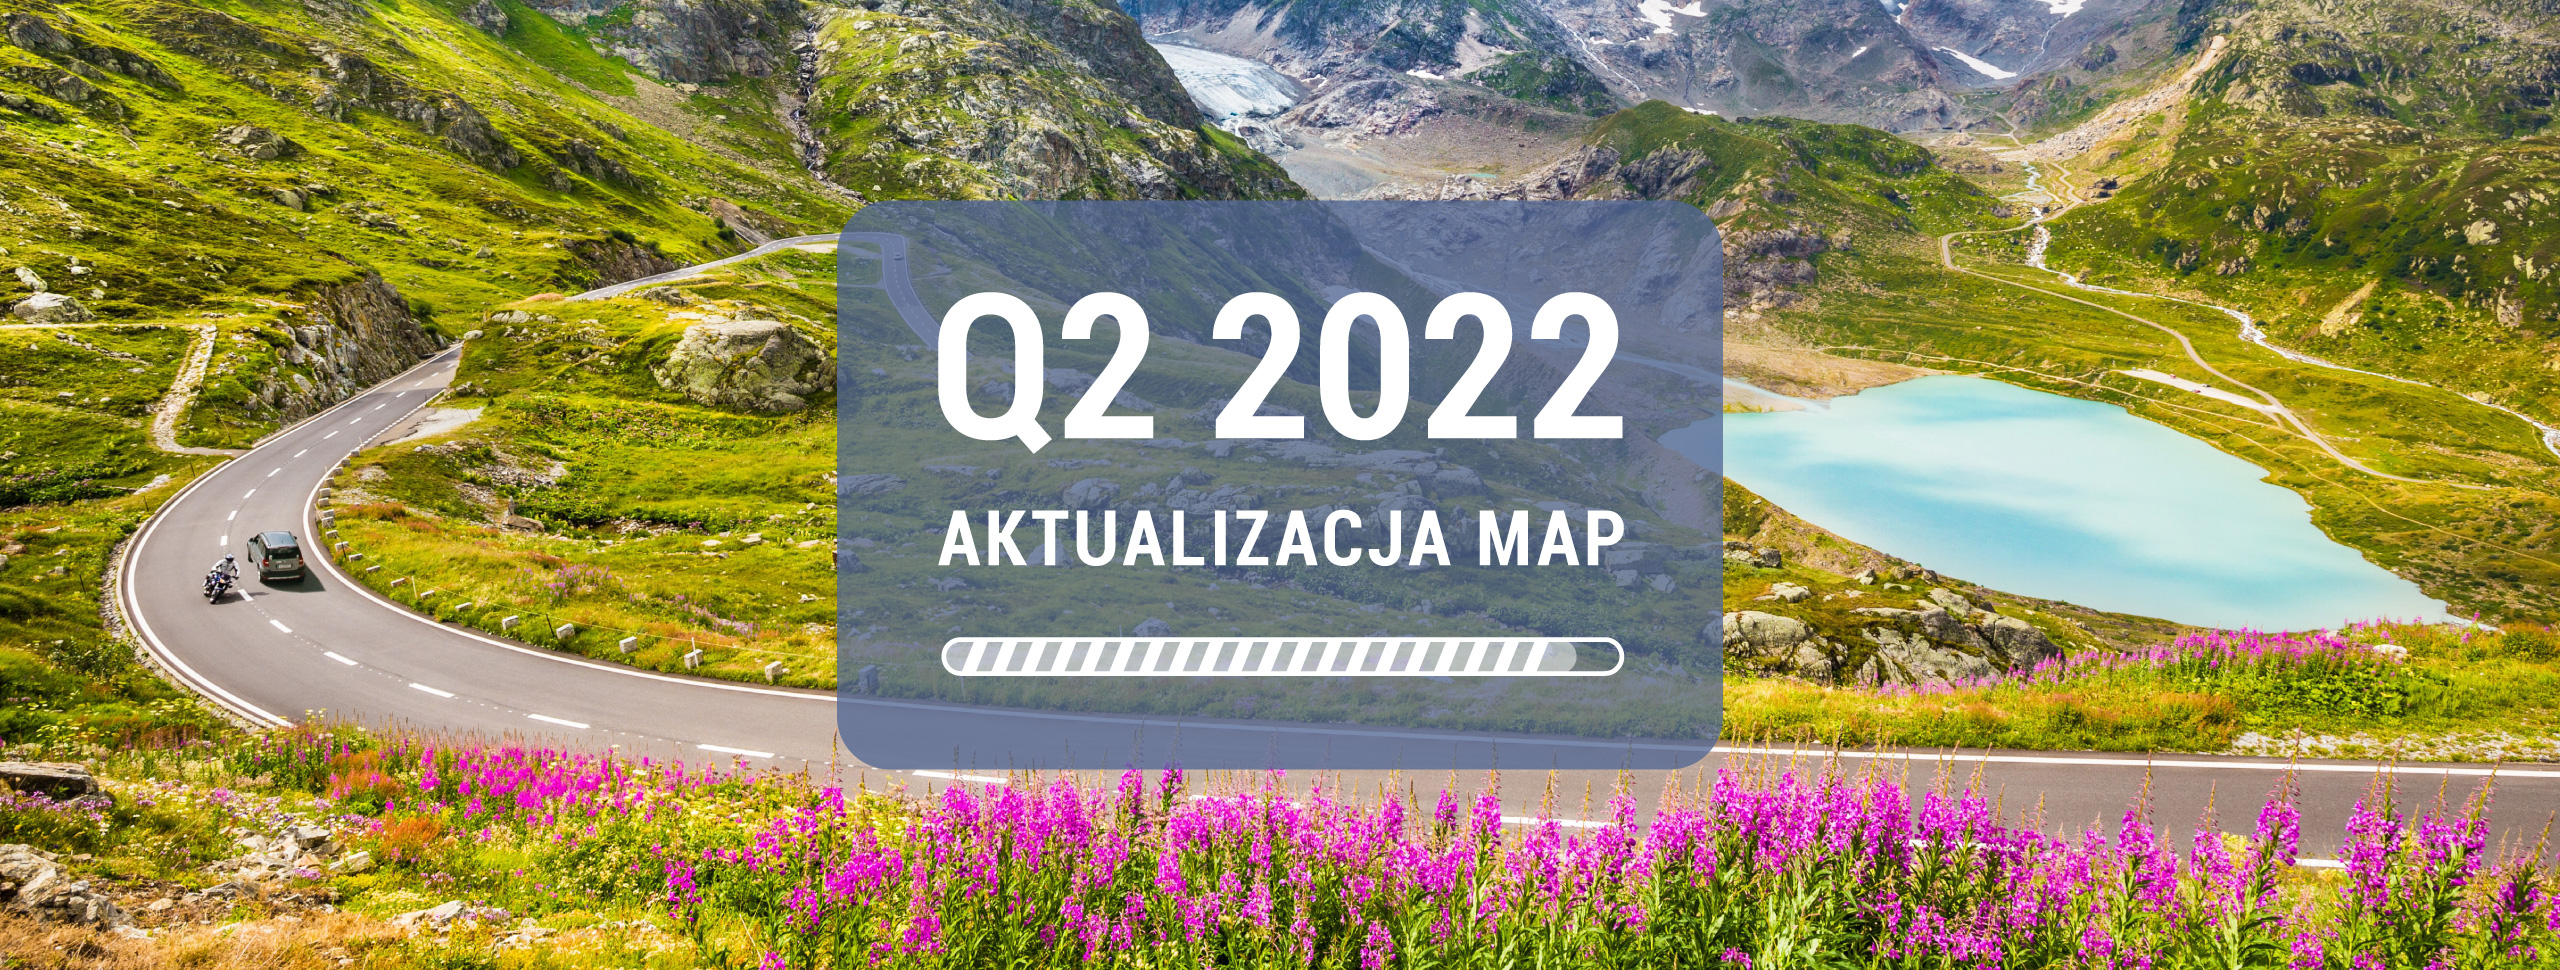 NAVITEL® wydaje globalną aktualizację dla wszystkich map – Q2 2022